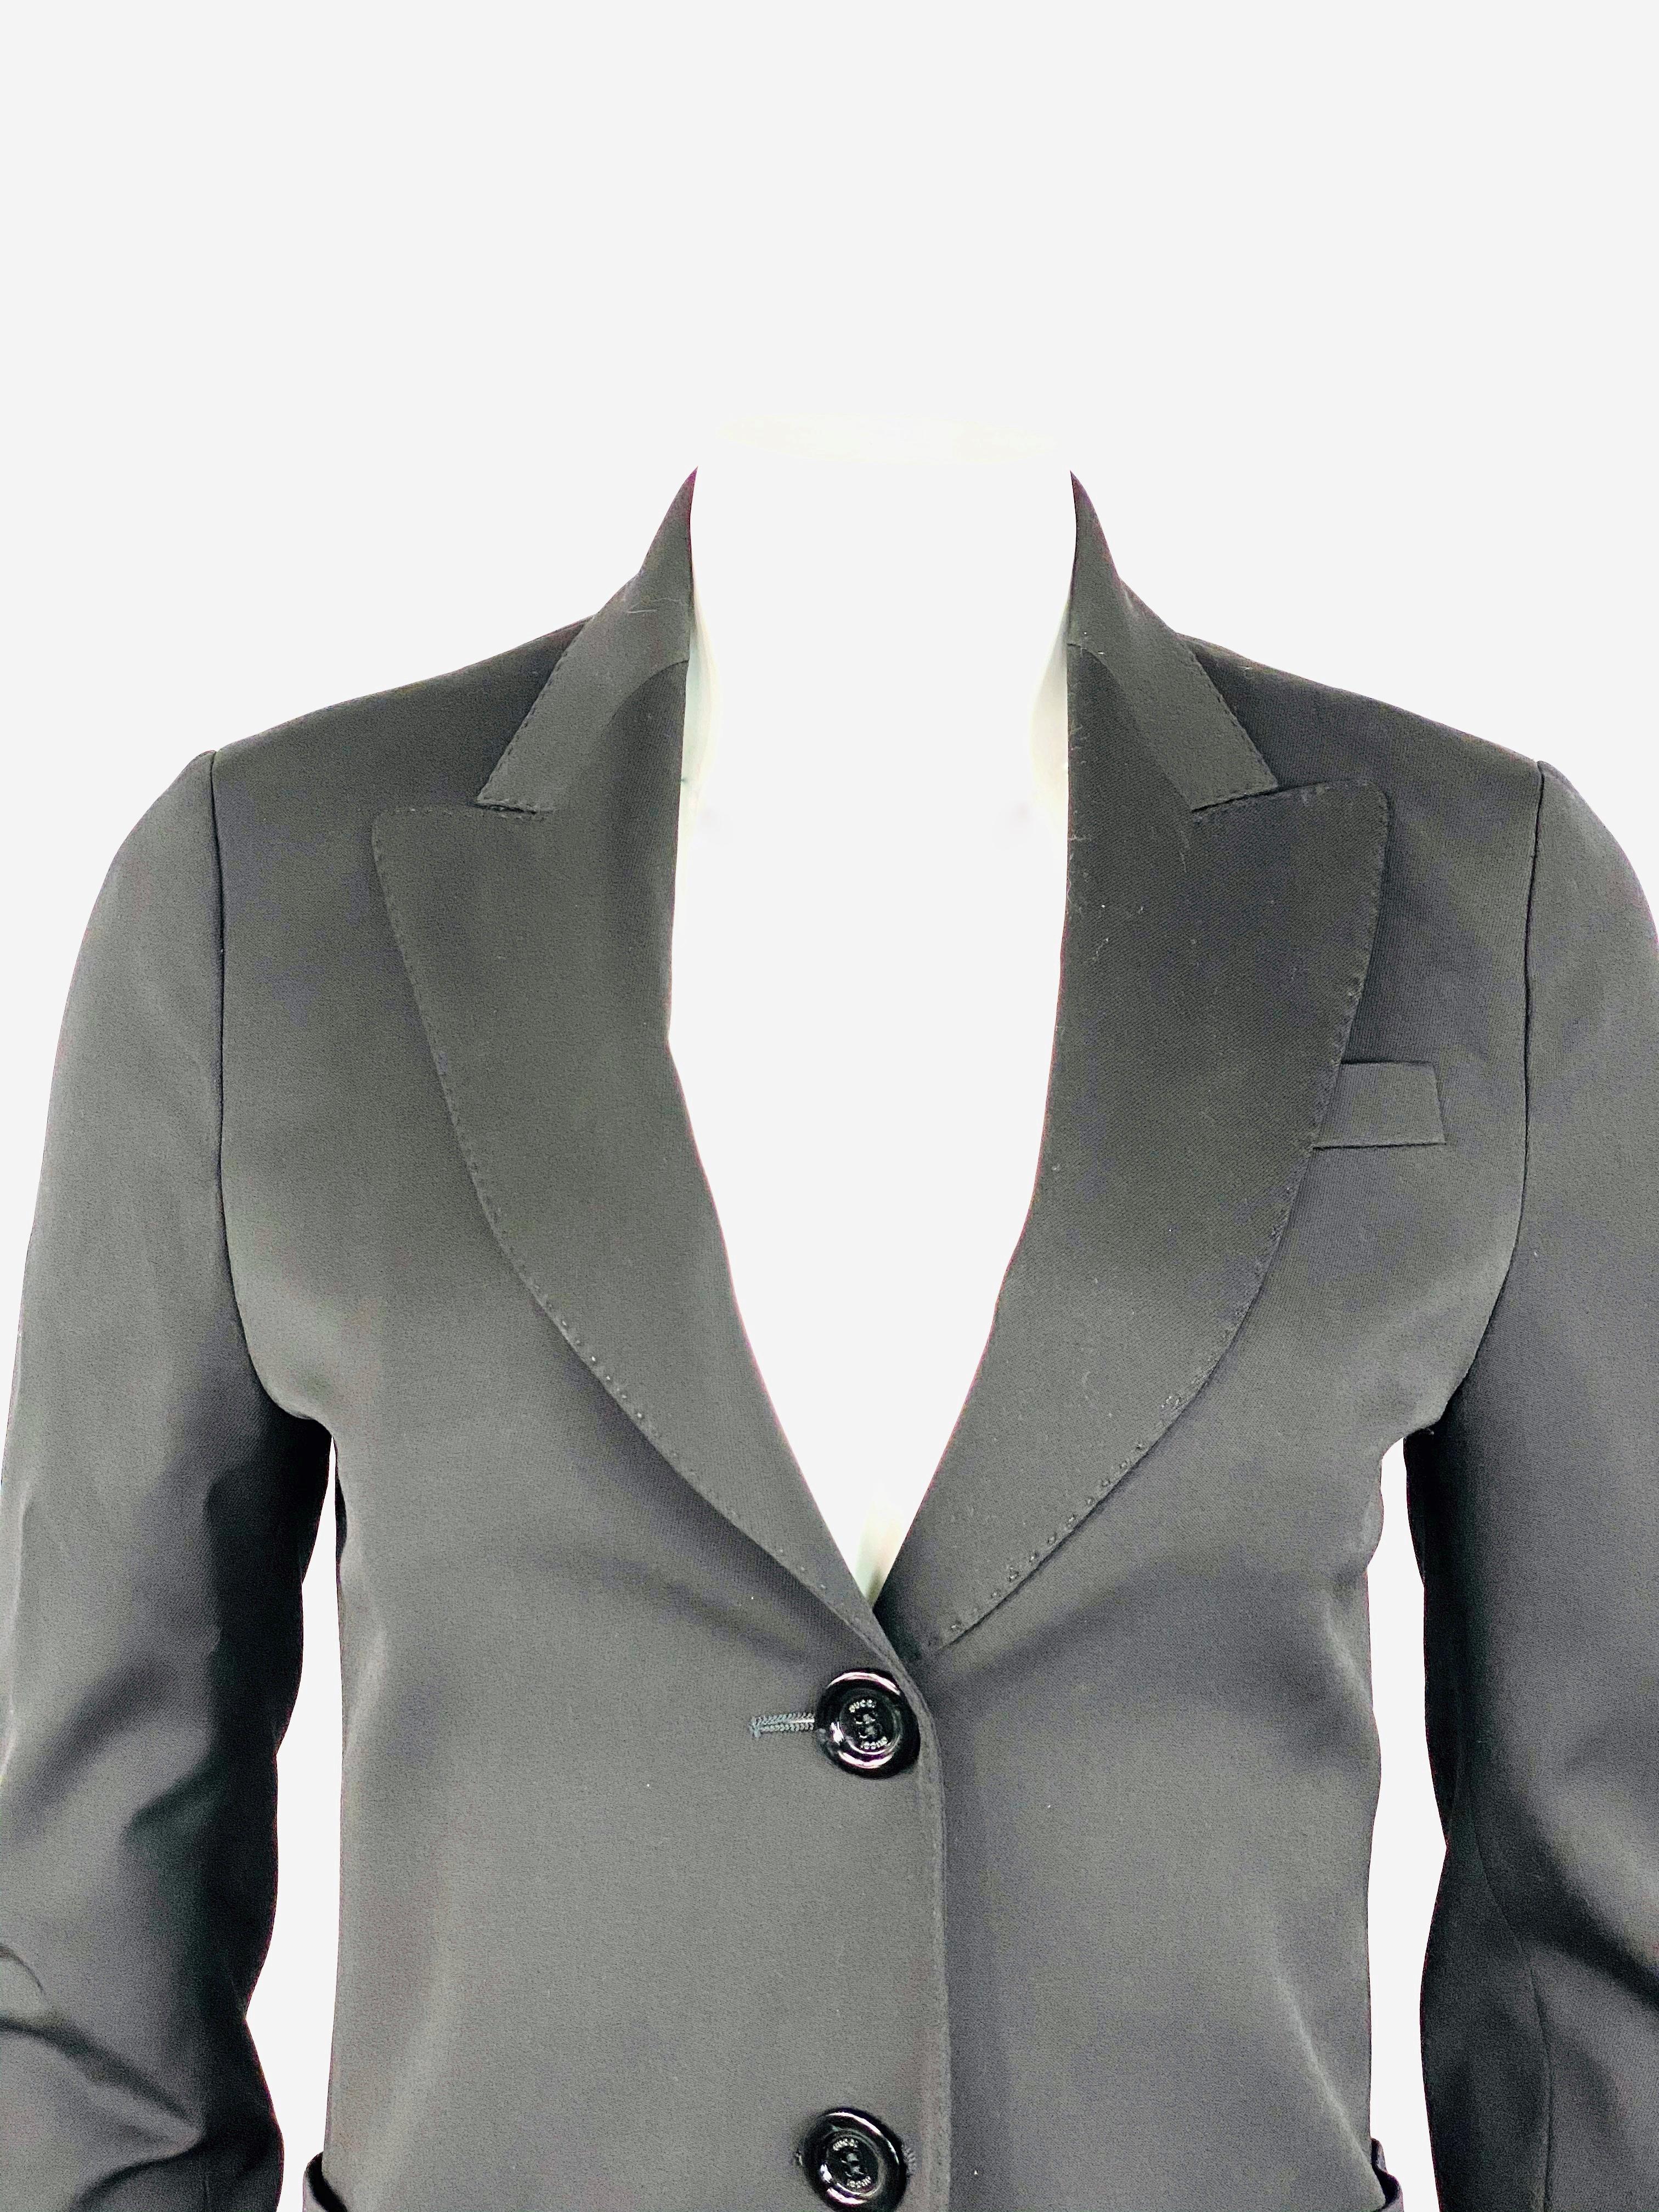 Women's or Men's Gucci Black Wool Blazer Jacket Size 40